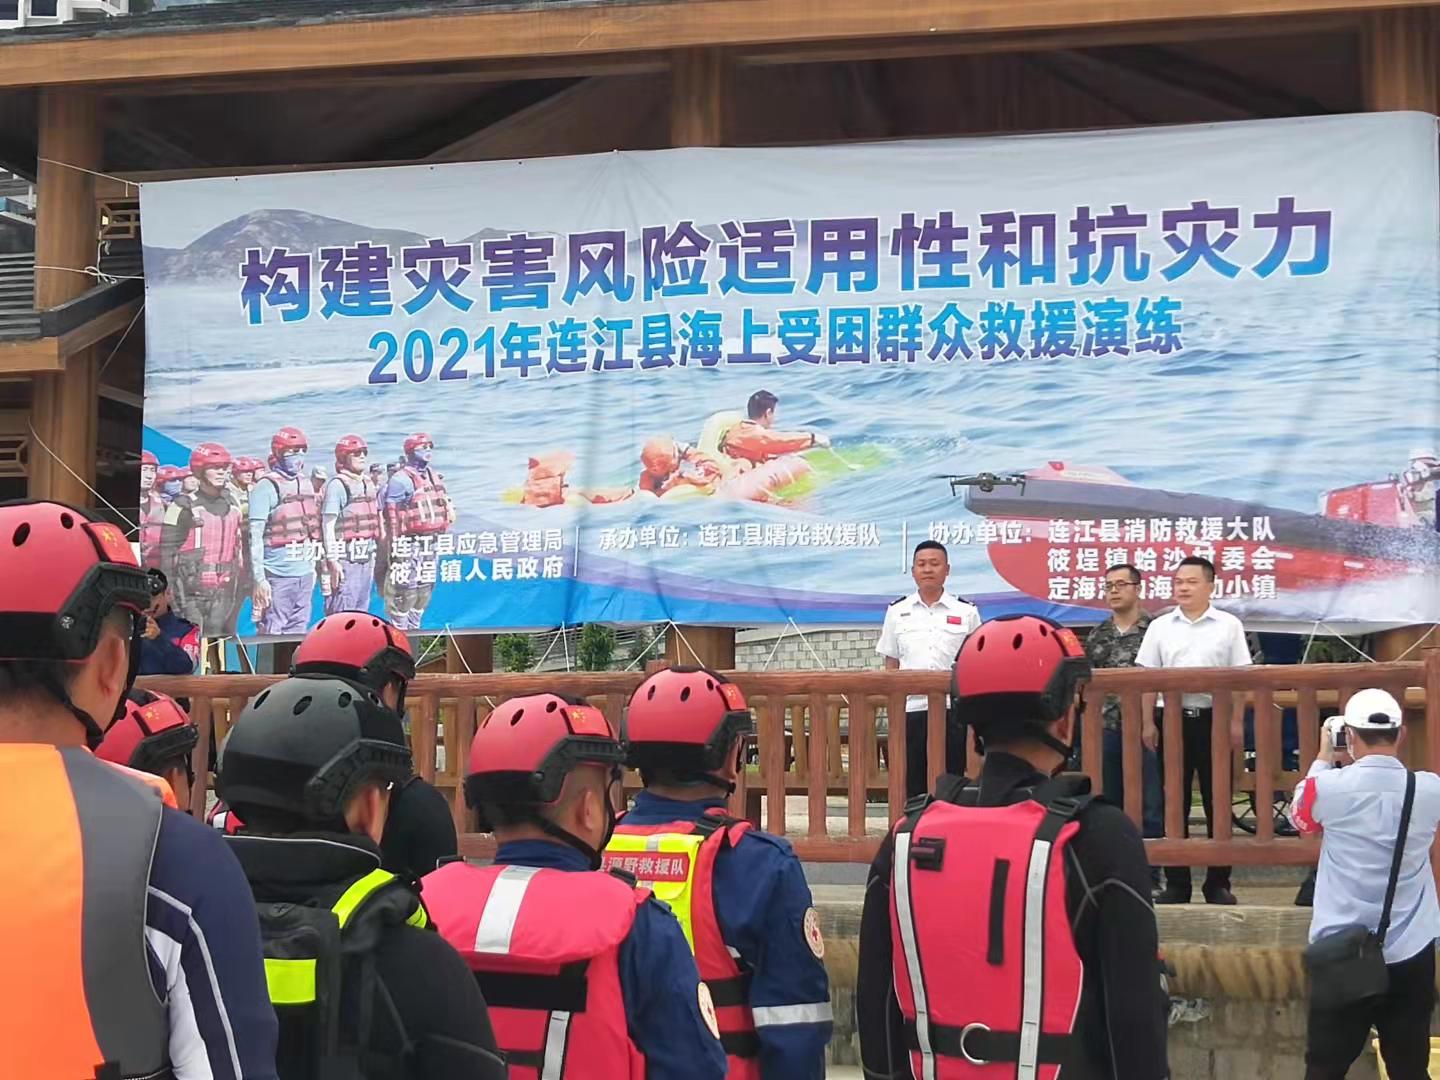 筱埕镇组织开展2021年连江县海上受困群众救援演练。